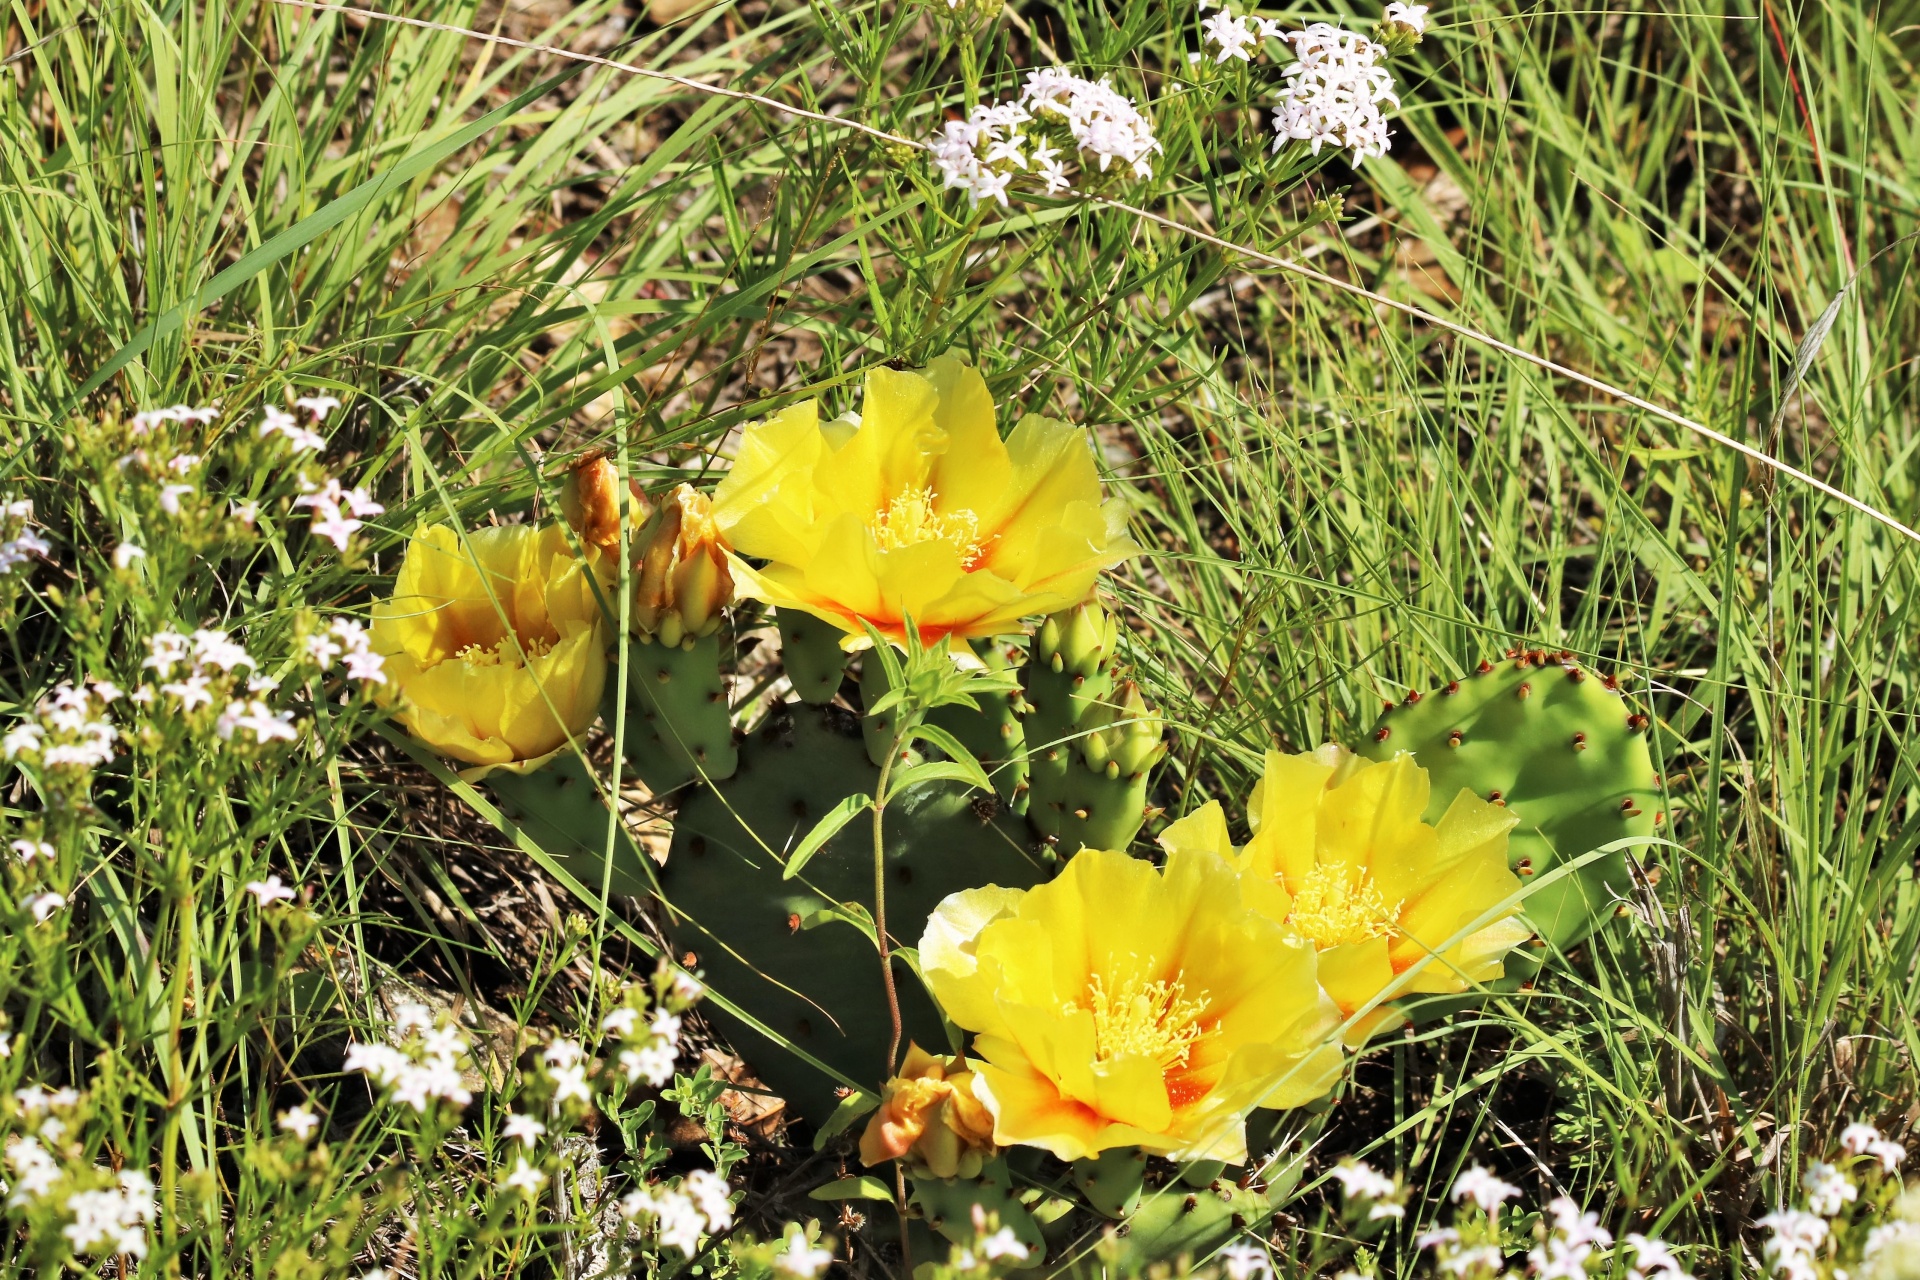 Stachelige Birne Cactus Blooms